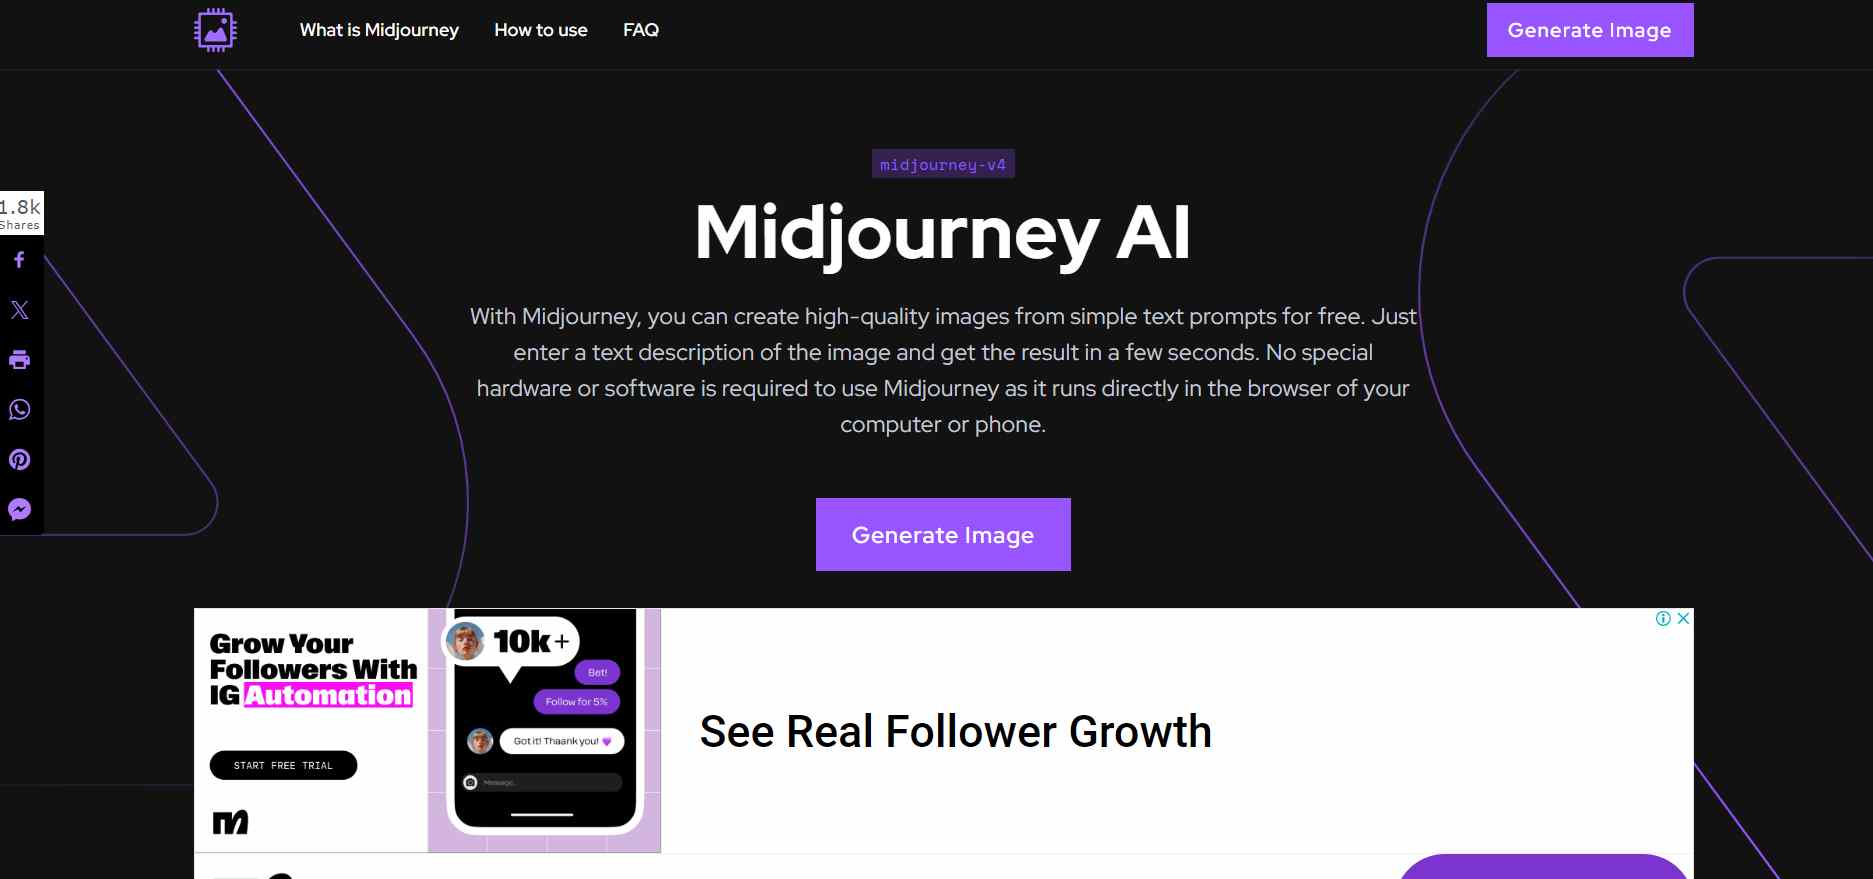  Erkunden Sie Midjourney, ein führendes AI-Generatortool, das stilisierten Text und möglicherweise grafische Elemente enthält, die Innovation und Technologie symbolisieren. 